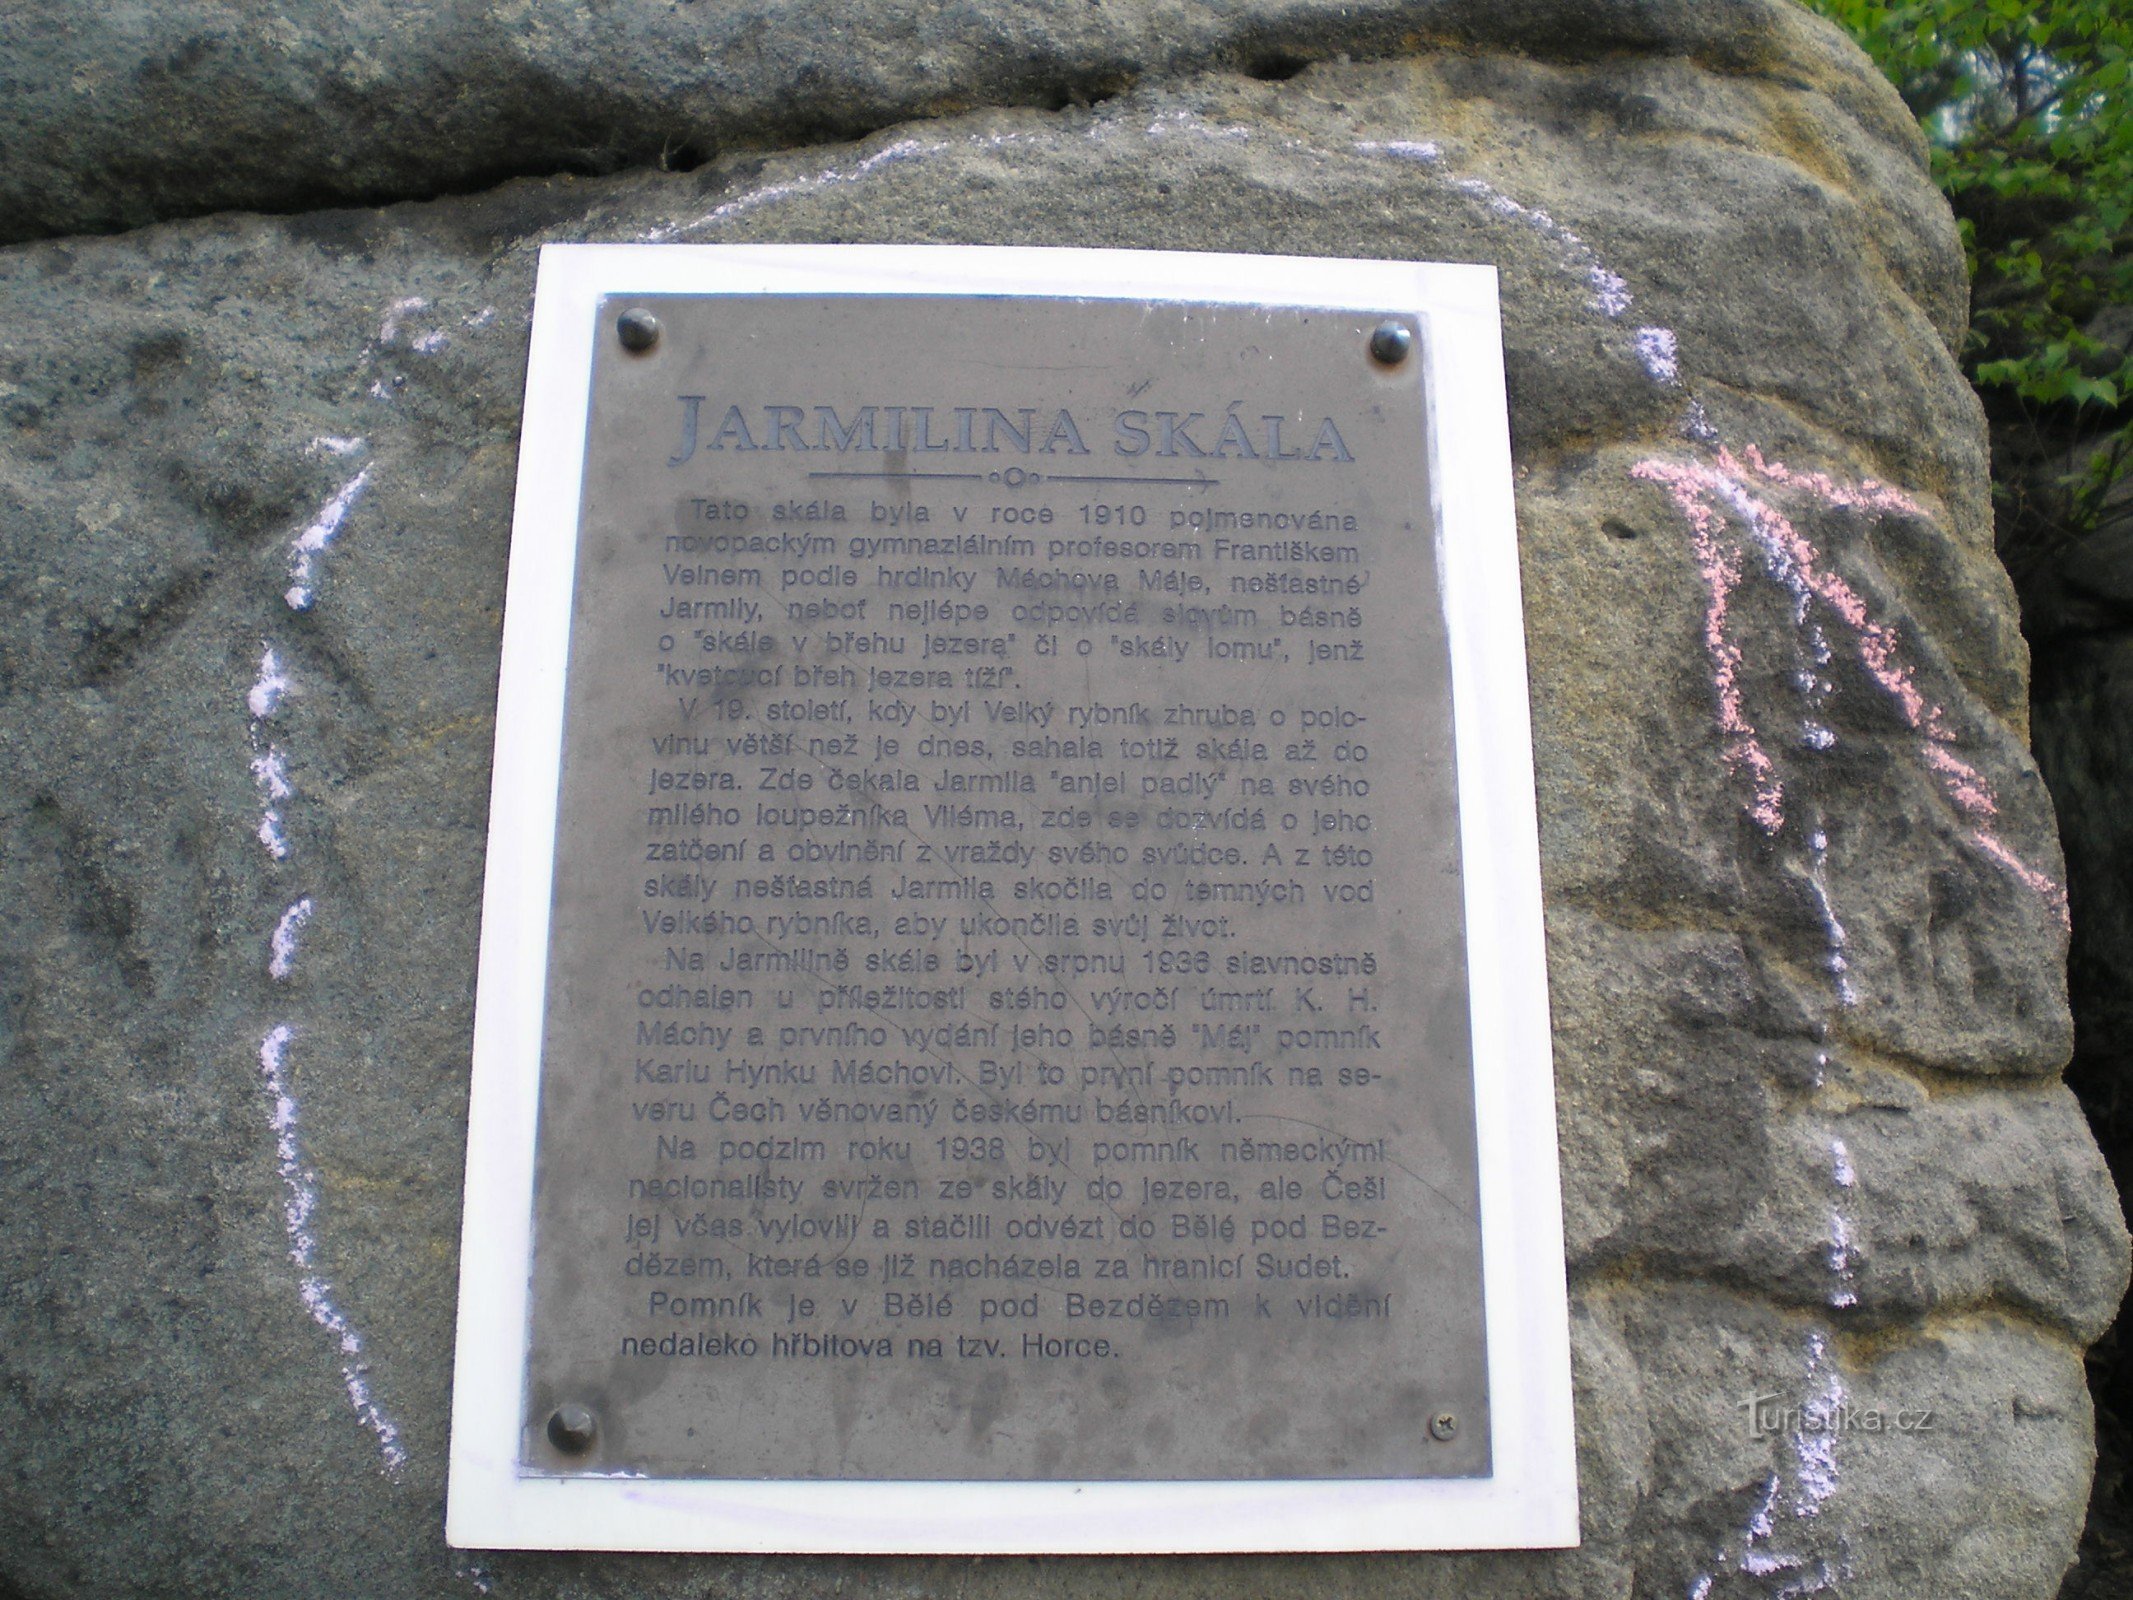 Spominska plošča na Jarmilini skali